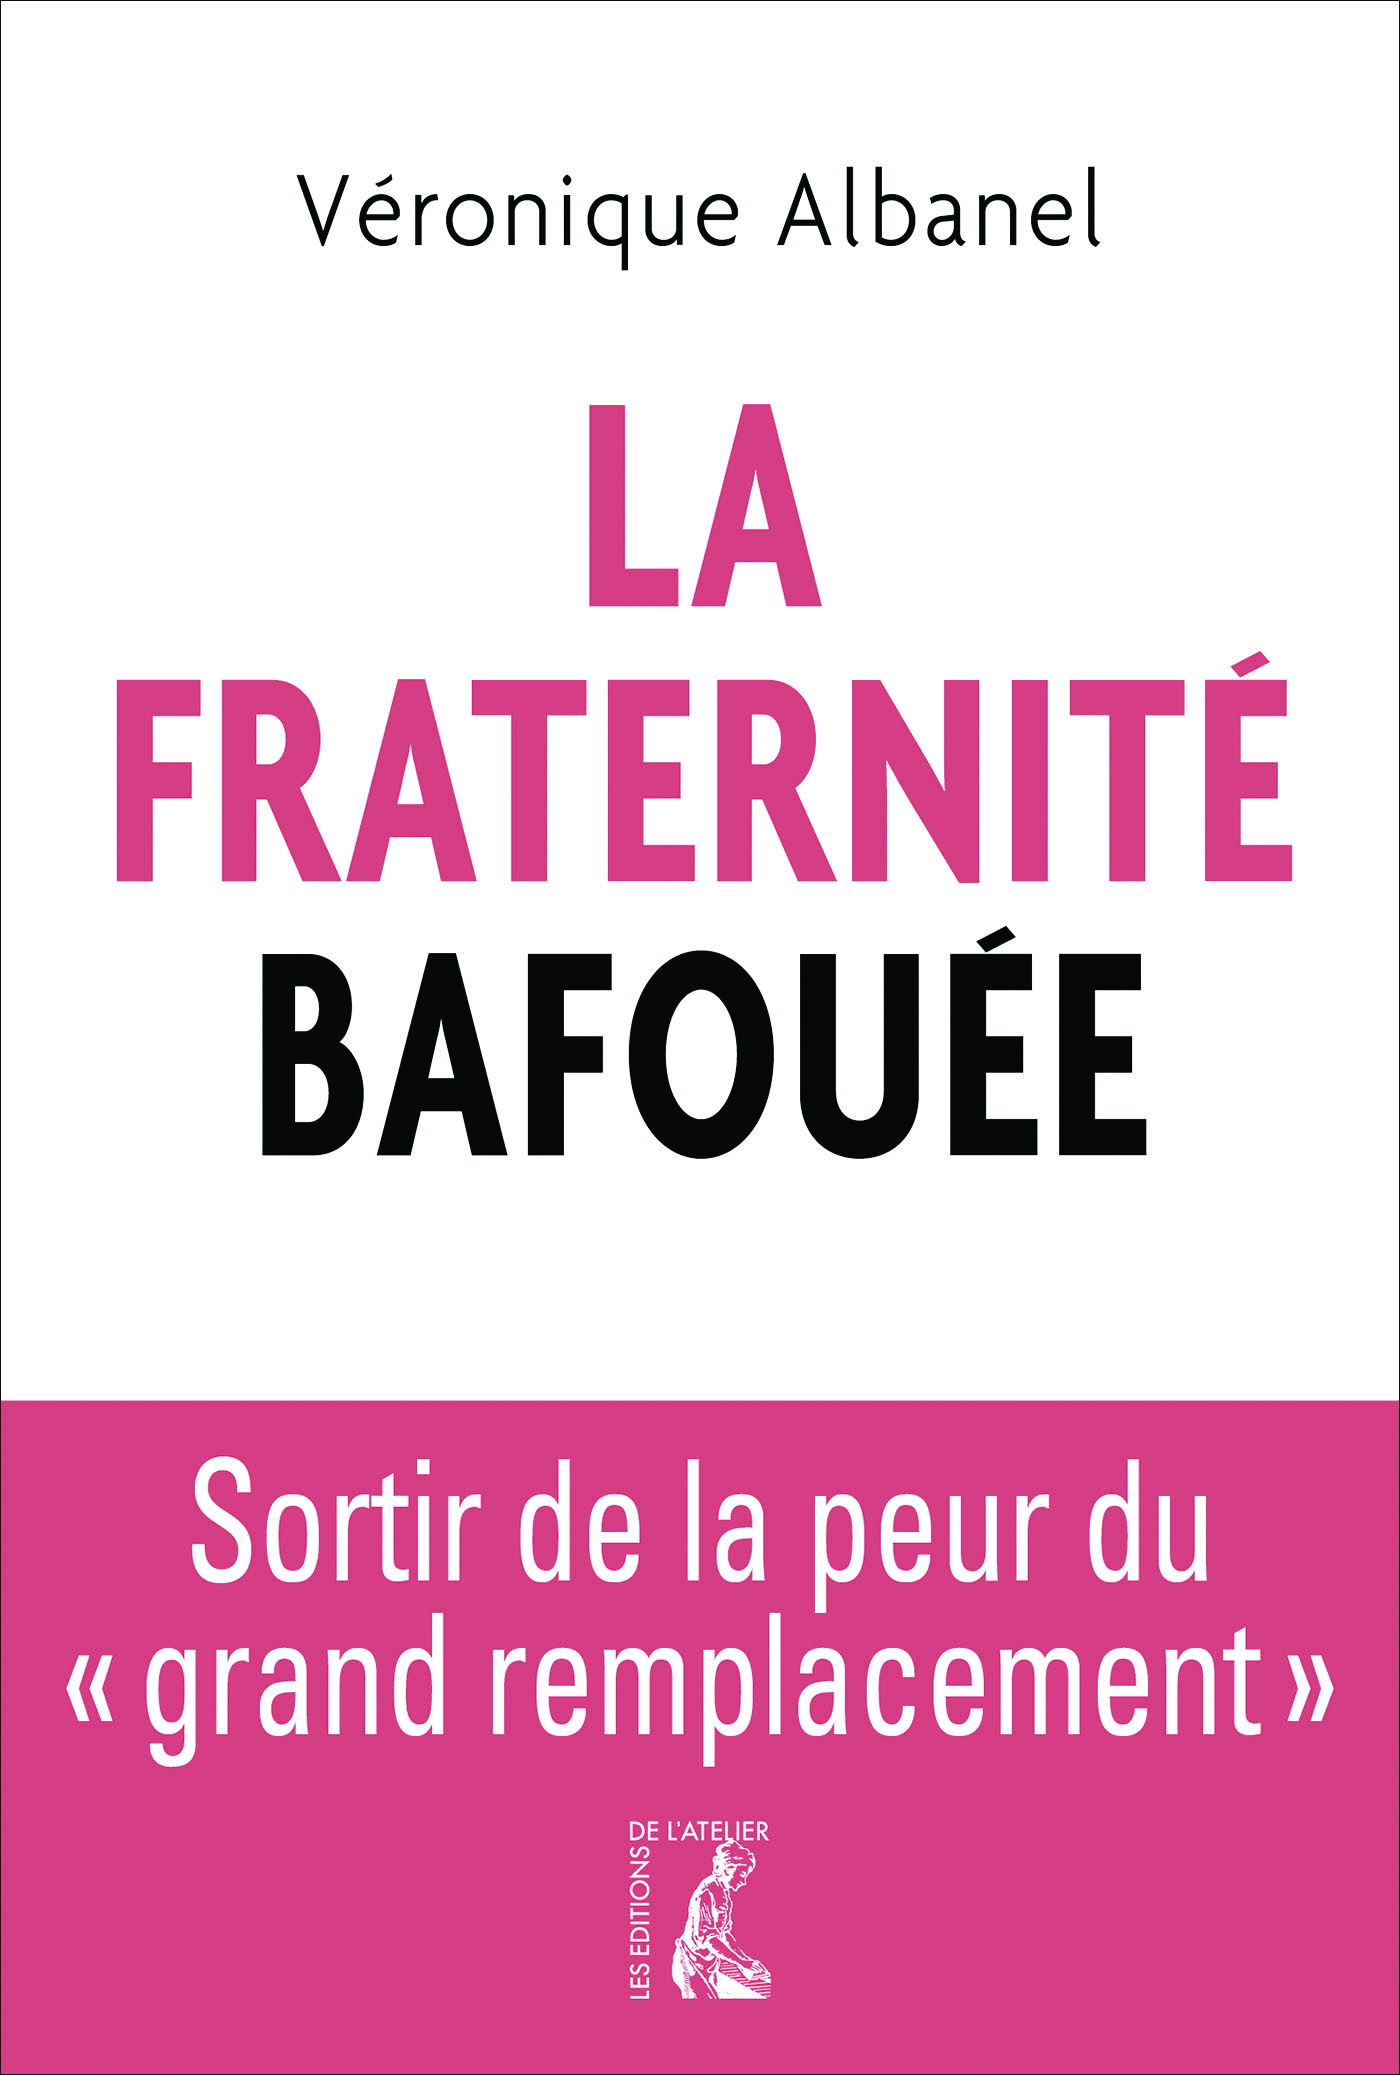 La fraternité bafouée - Véronique Albanel - Éditions de l'Atelier